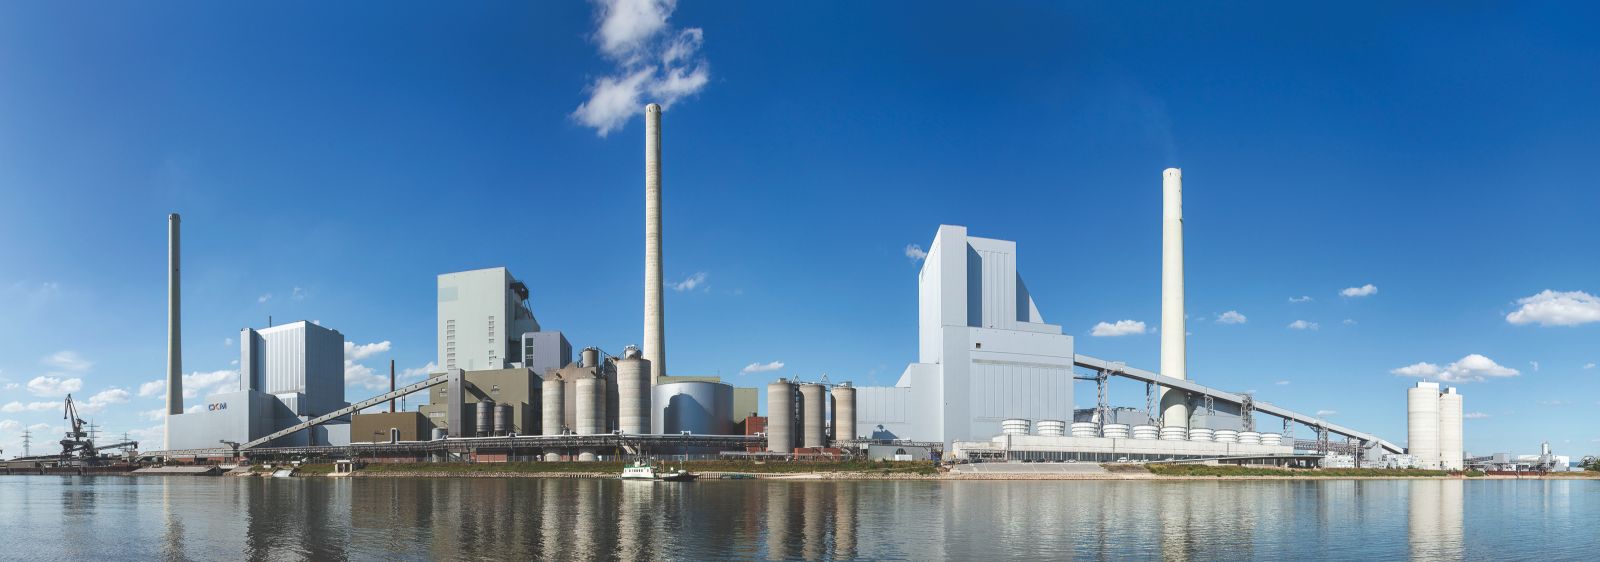 Das am Rhein gelegene Kraftwerk zeichnet sich durch sehr leistungsfähige Wasserentnahme- und Rücklaufeinrichtungen aus. Diese eignen sich optimal als Wärmequelle für eine Großwärmepumpe.